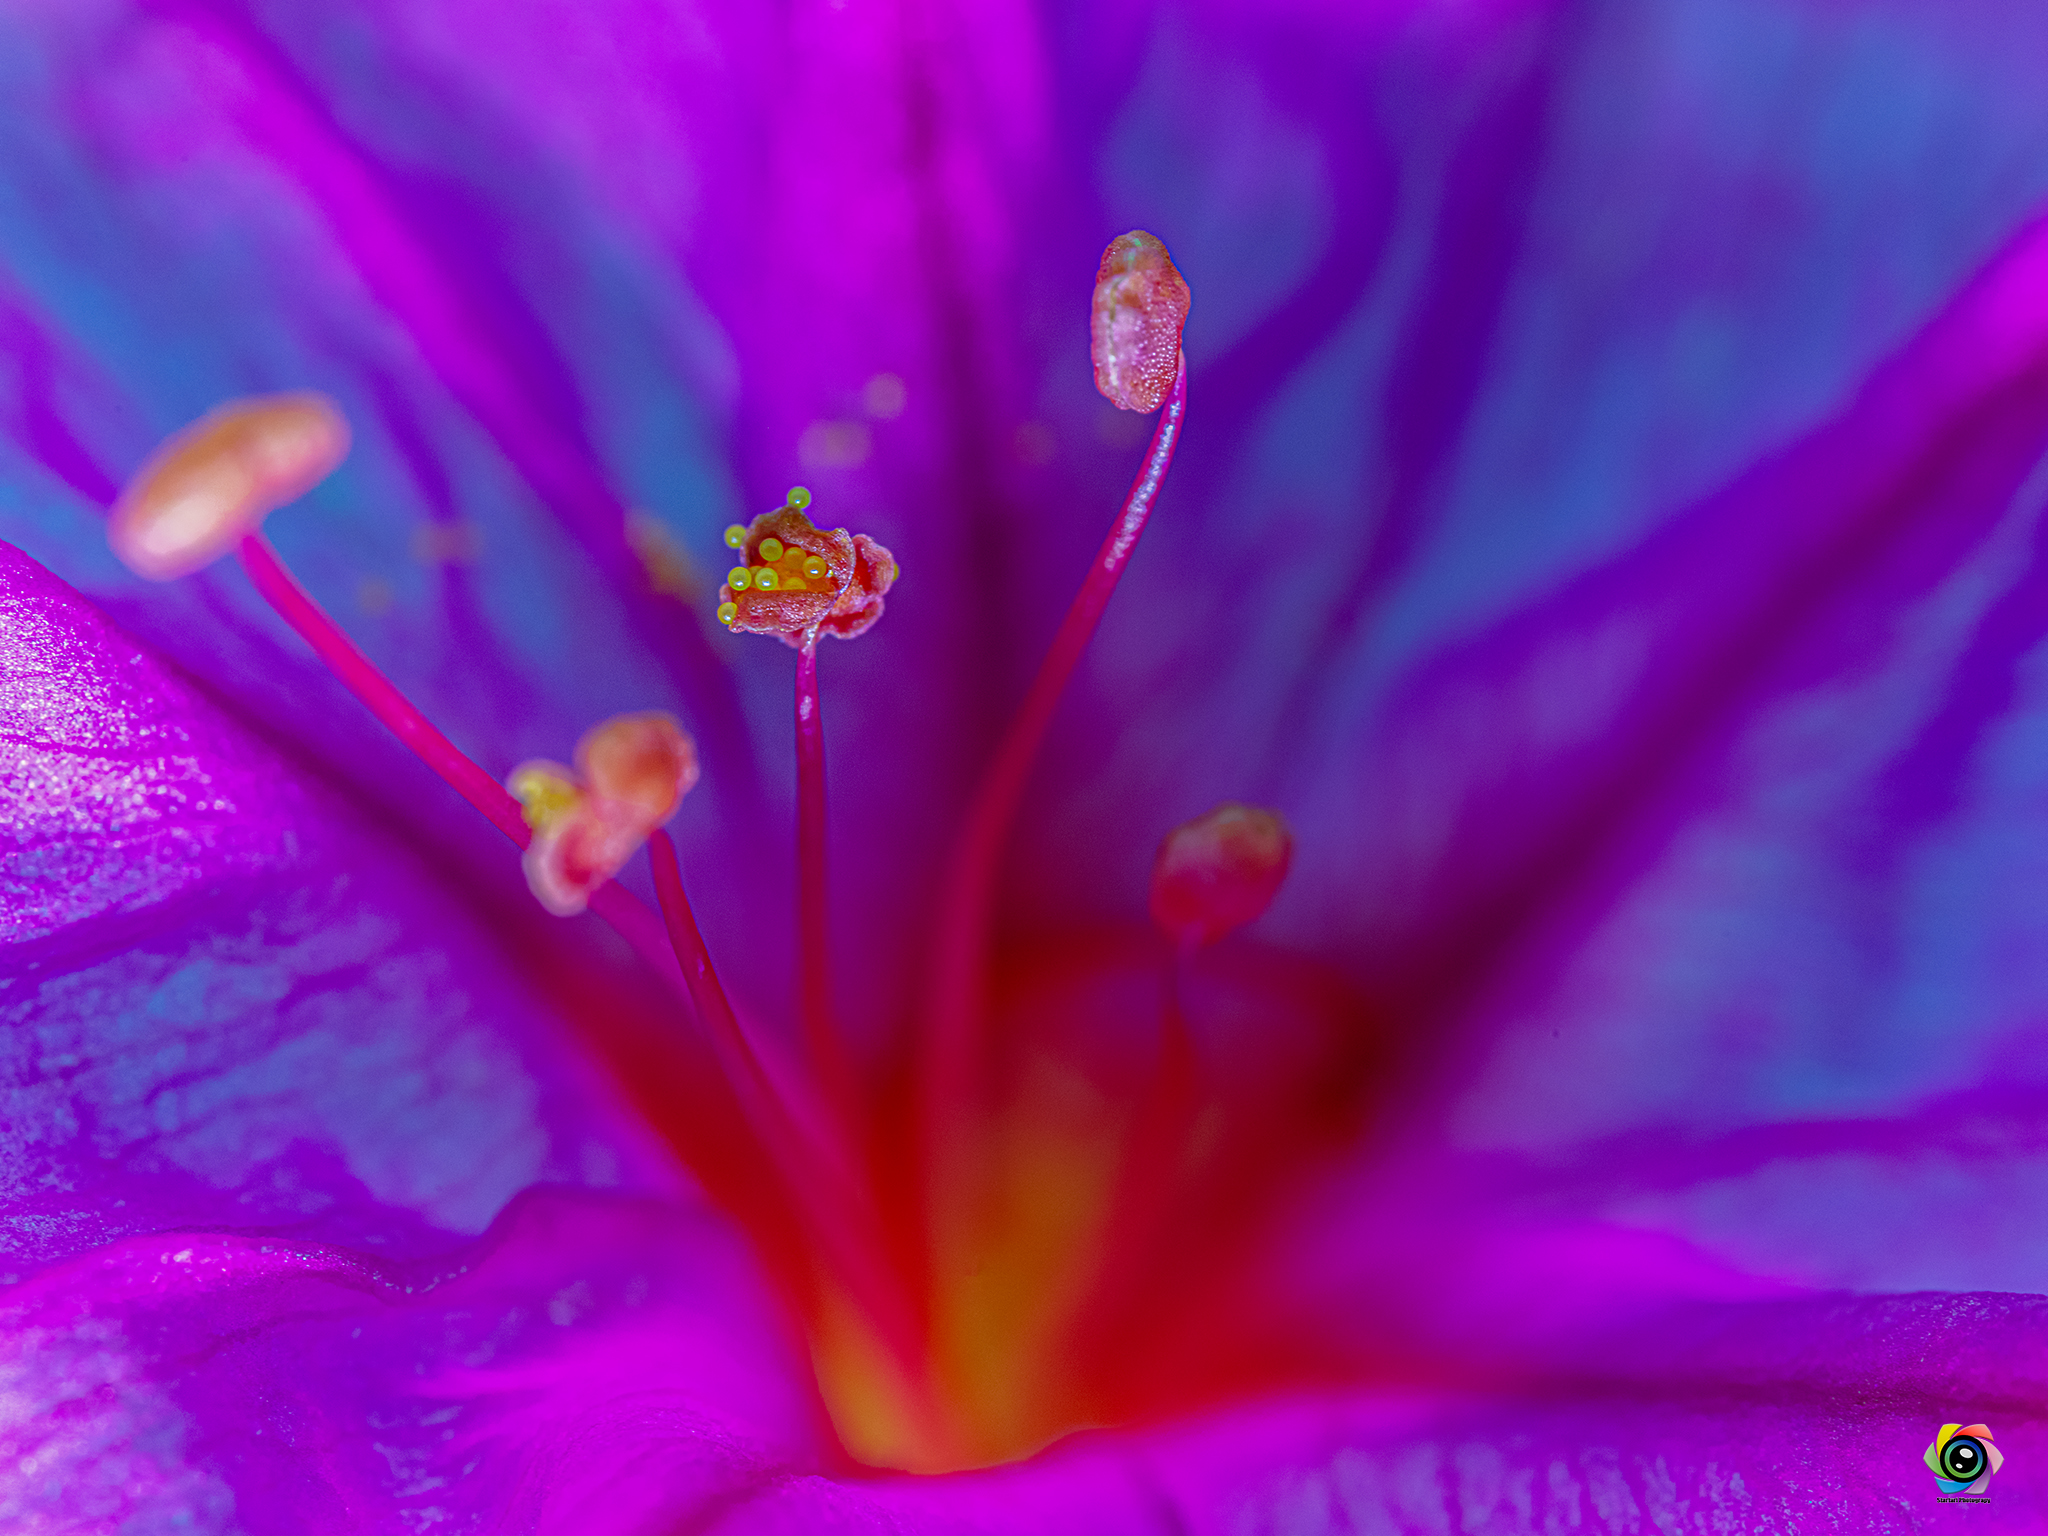 Inside the flower...